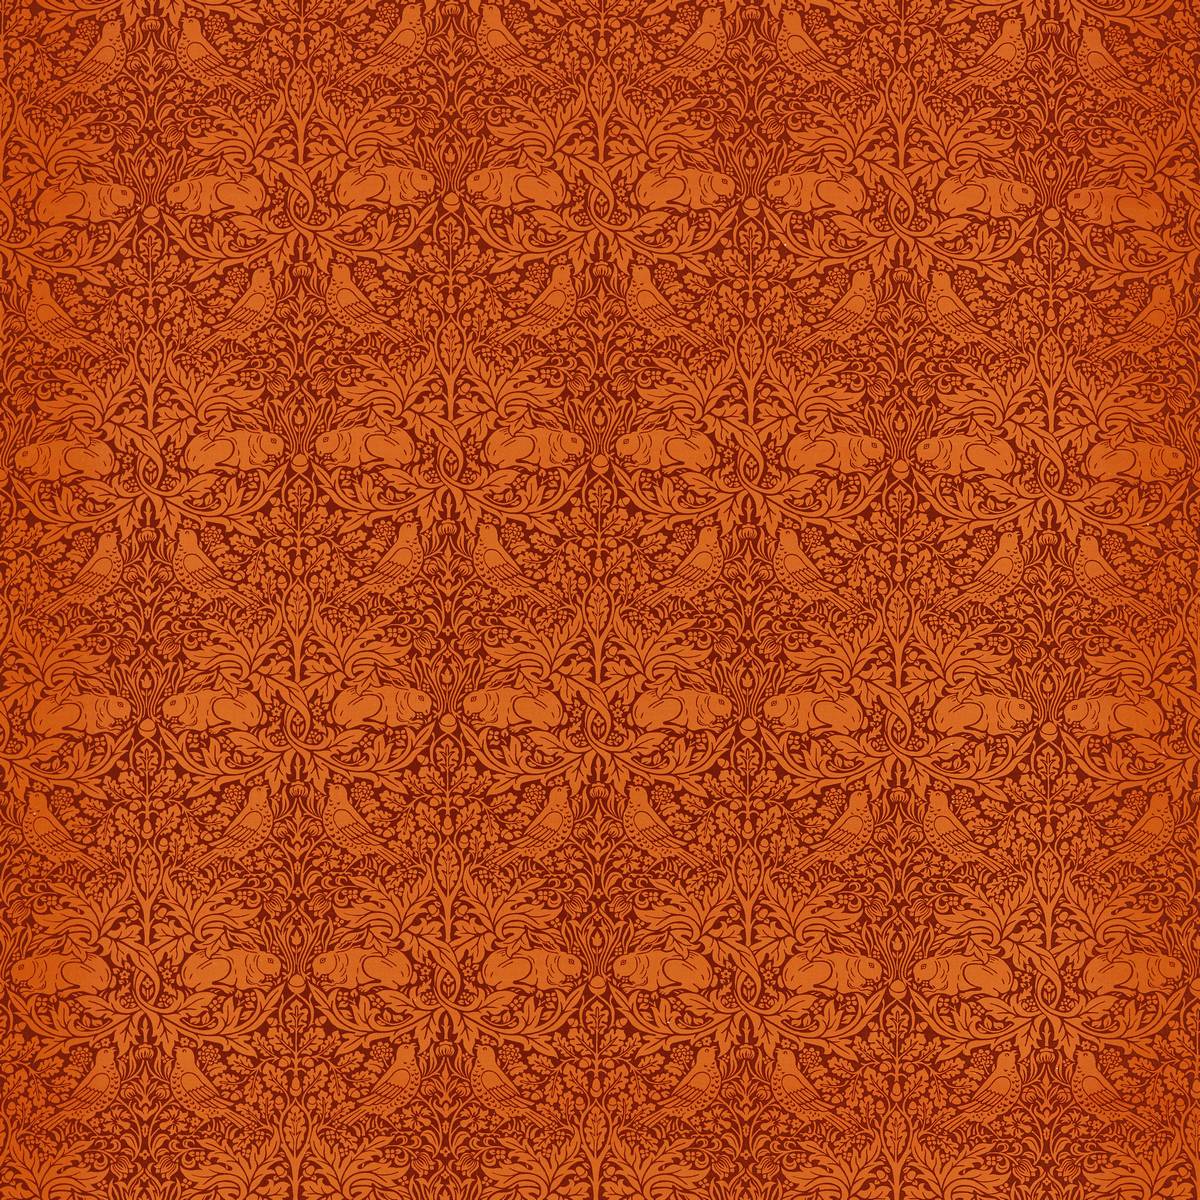 Brer Rabbit Burnt Orange Fabric by William Morris & Co.